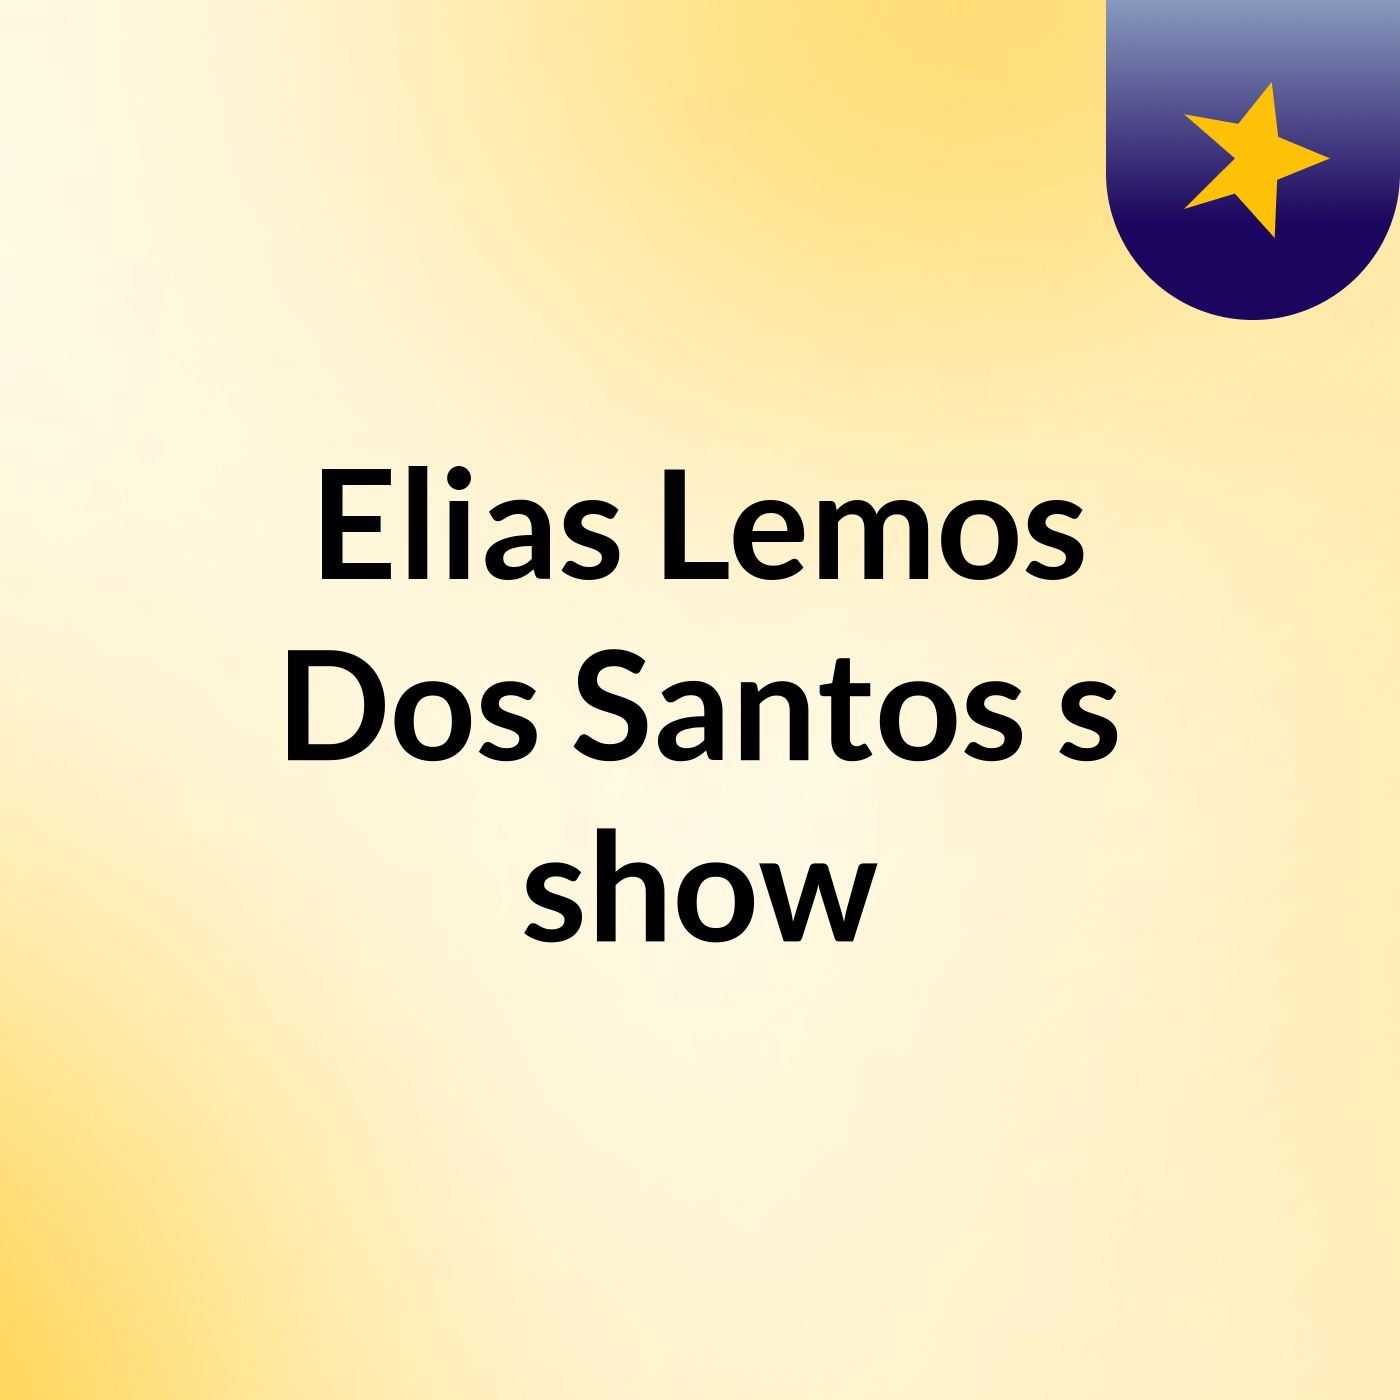 Elias Lemos Dos Santos's show